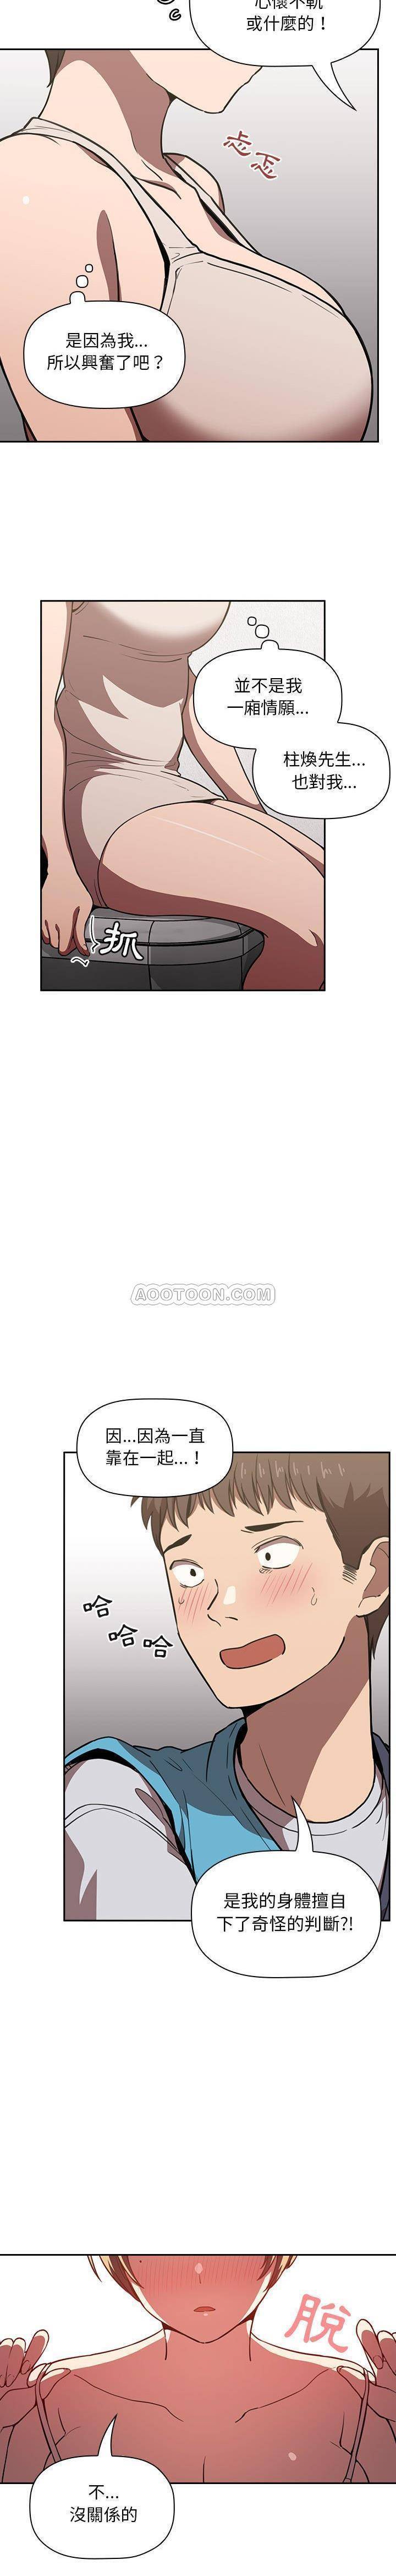 韩国污漫画 BJ的夢幻直播 第8话 20